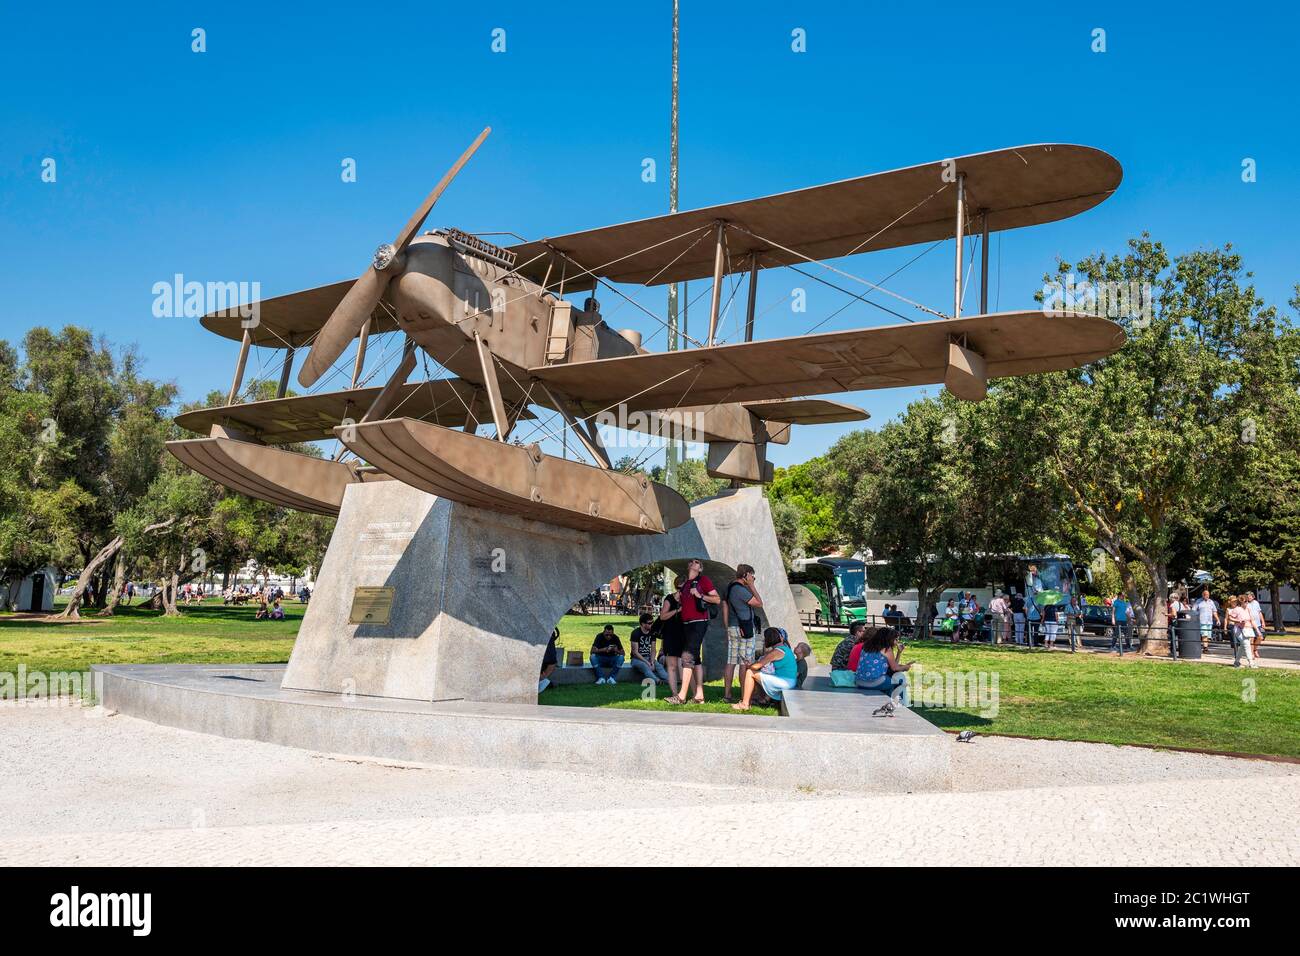 Monument commémorant la première traversée aérienne de l'océan Atlantique Sud, par Gago Coutinho et Sacadura Cabral en 1922. Belem, Lisbonne, Portugal. Banque D'Images